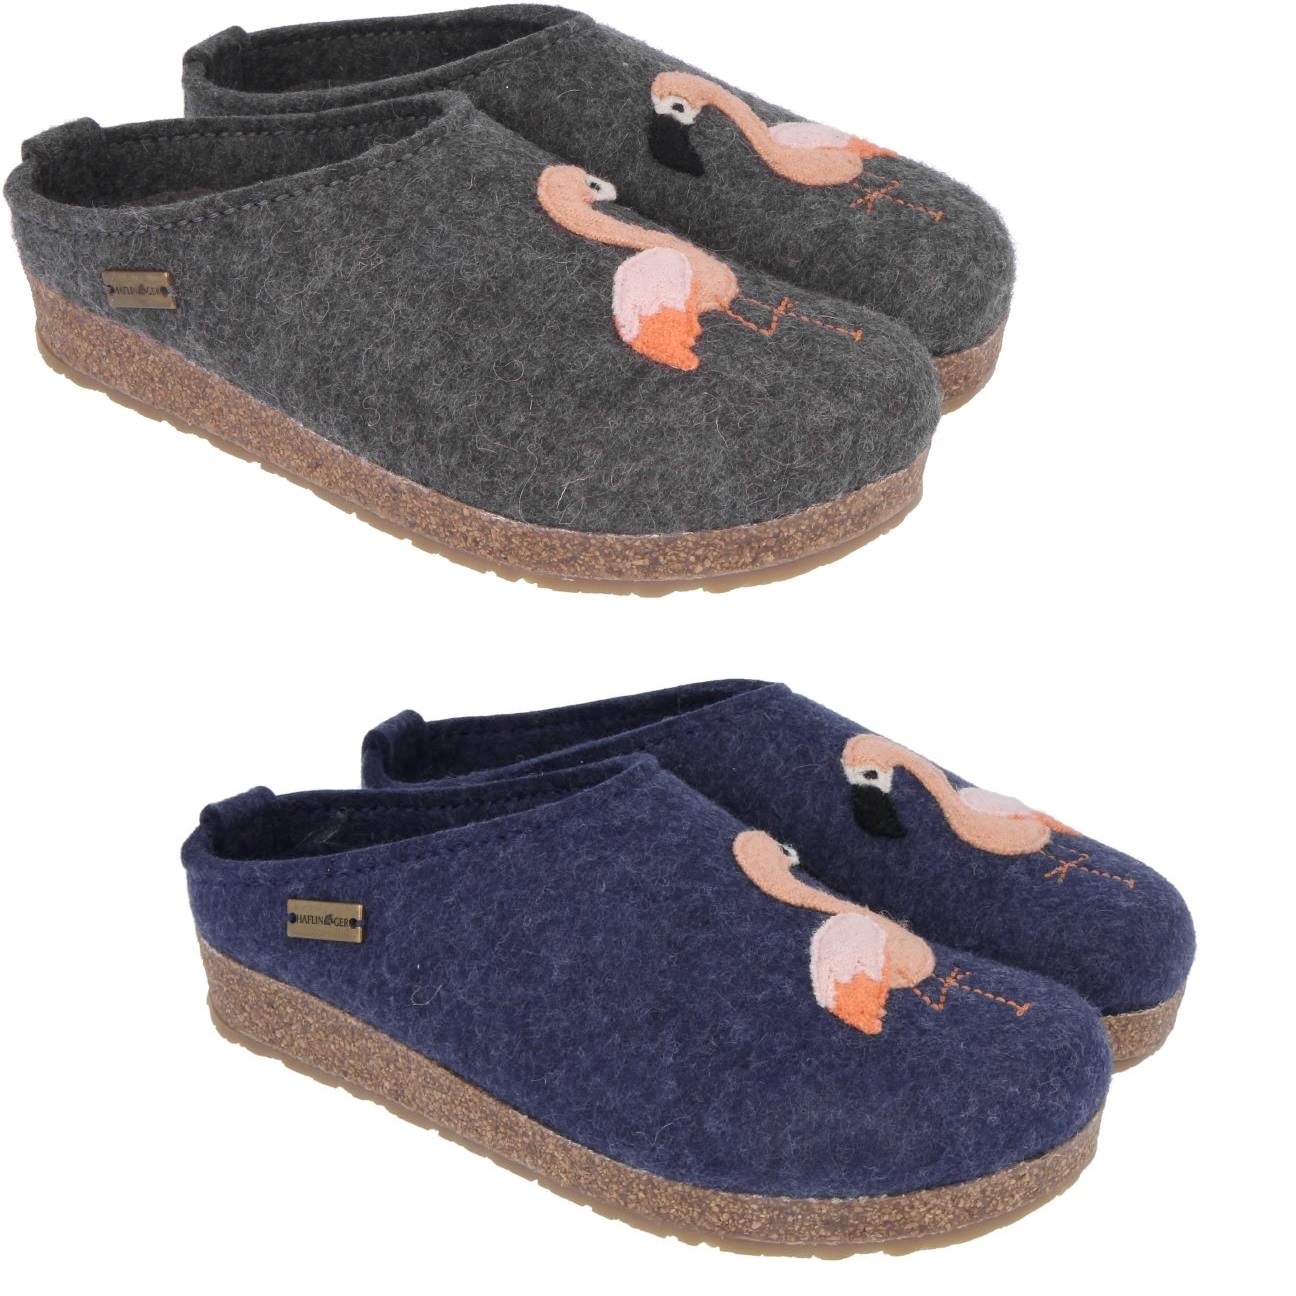 haflinger wool slippers womens